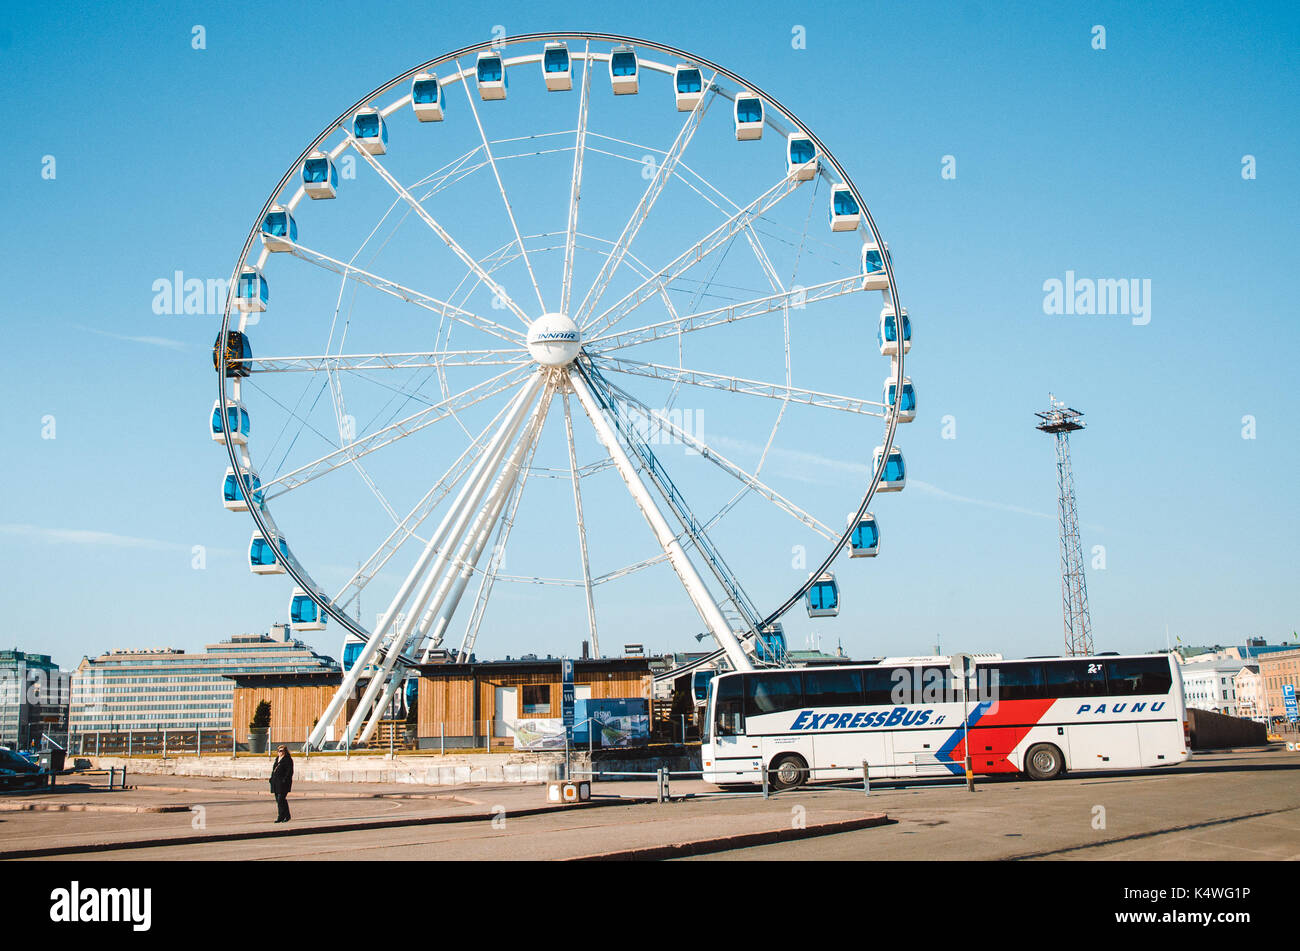 Helsinki, Finlandia - marzo, 17, 2015: bus passeggero sorge nella parte anteriore della ruota panoramica Ferris nel porto di Helsinki, Finlandia. Foto Stock